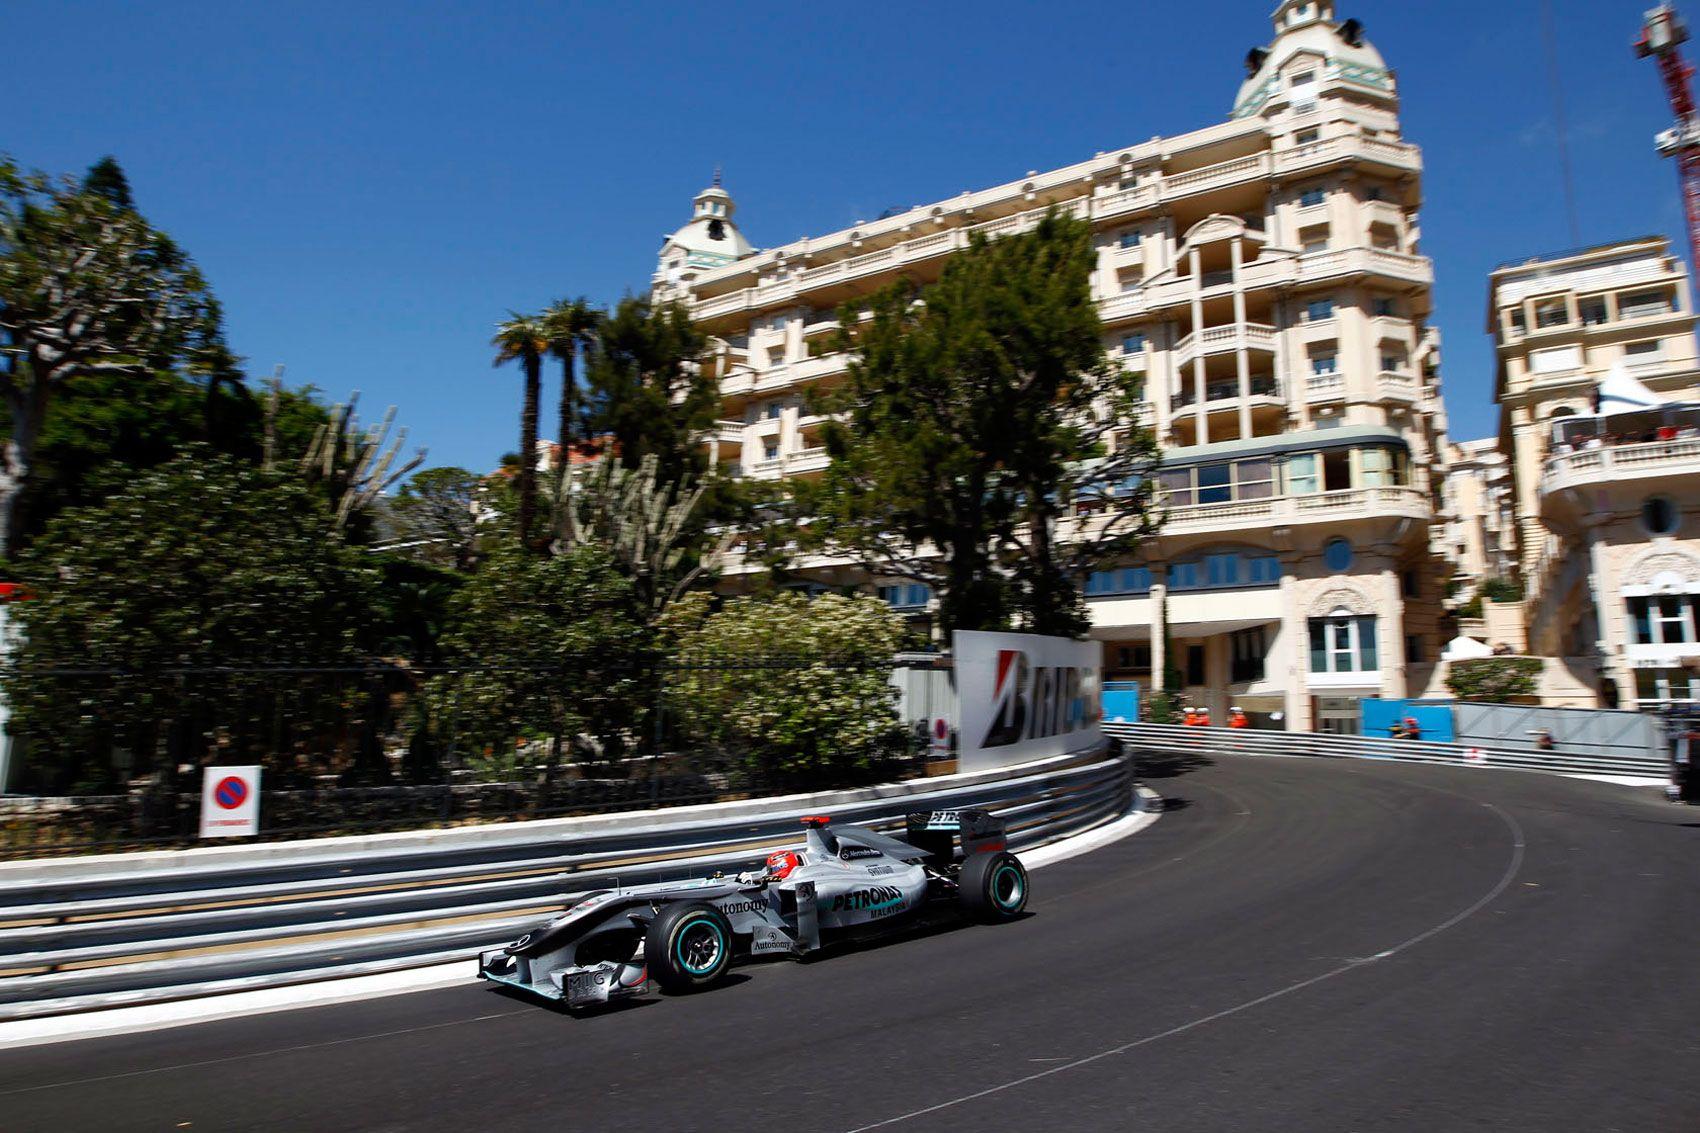 Monaco Grand Prix. Grand Prix of Monaco Wallpaper Free HD